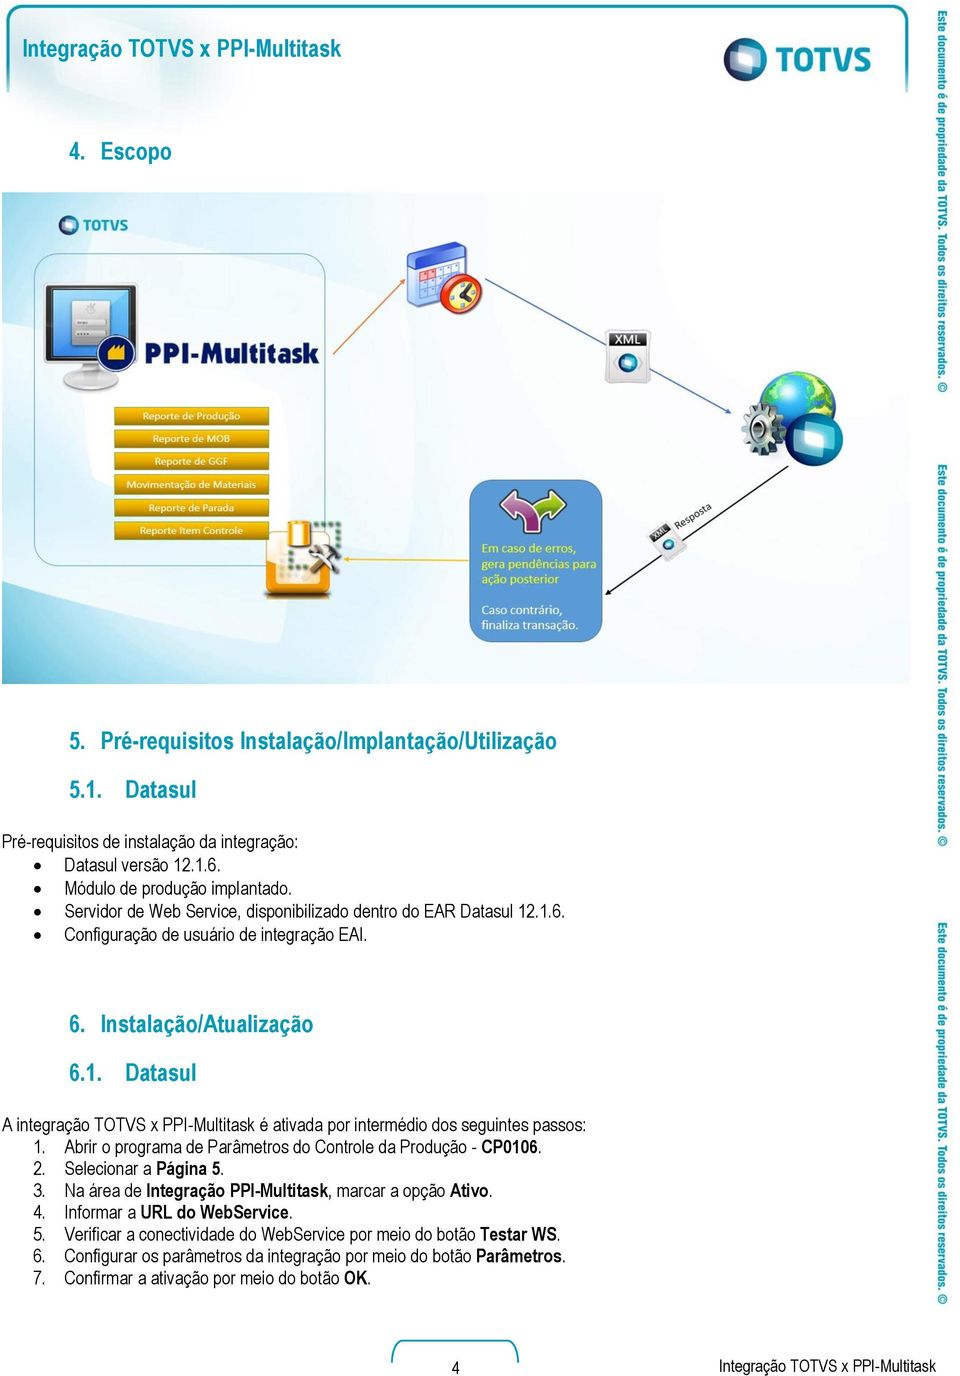 Abrir o programa de Parâmetros do Controle da Produção - CP0106. 2. Selecionar a Página 5. 3. Na área de Integração PPI-Multitask, marcar a opção Ativo. 4. Informar a URL do WebService. 5. Verificar a conectividade do WebService por meio do botão Testar WS.